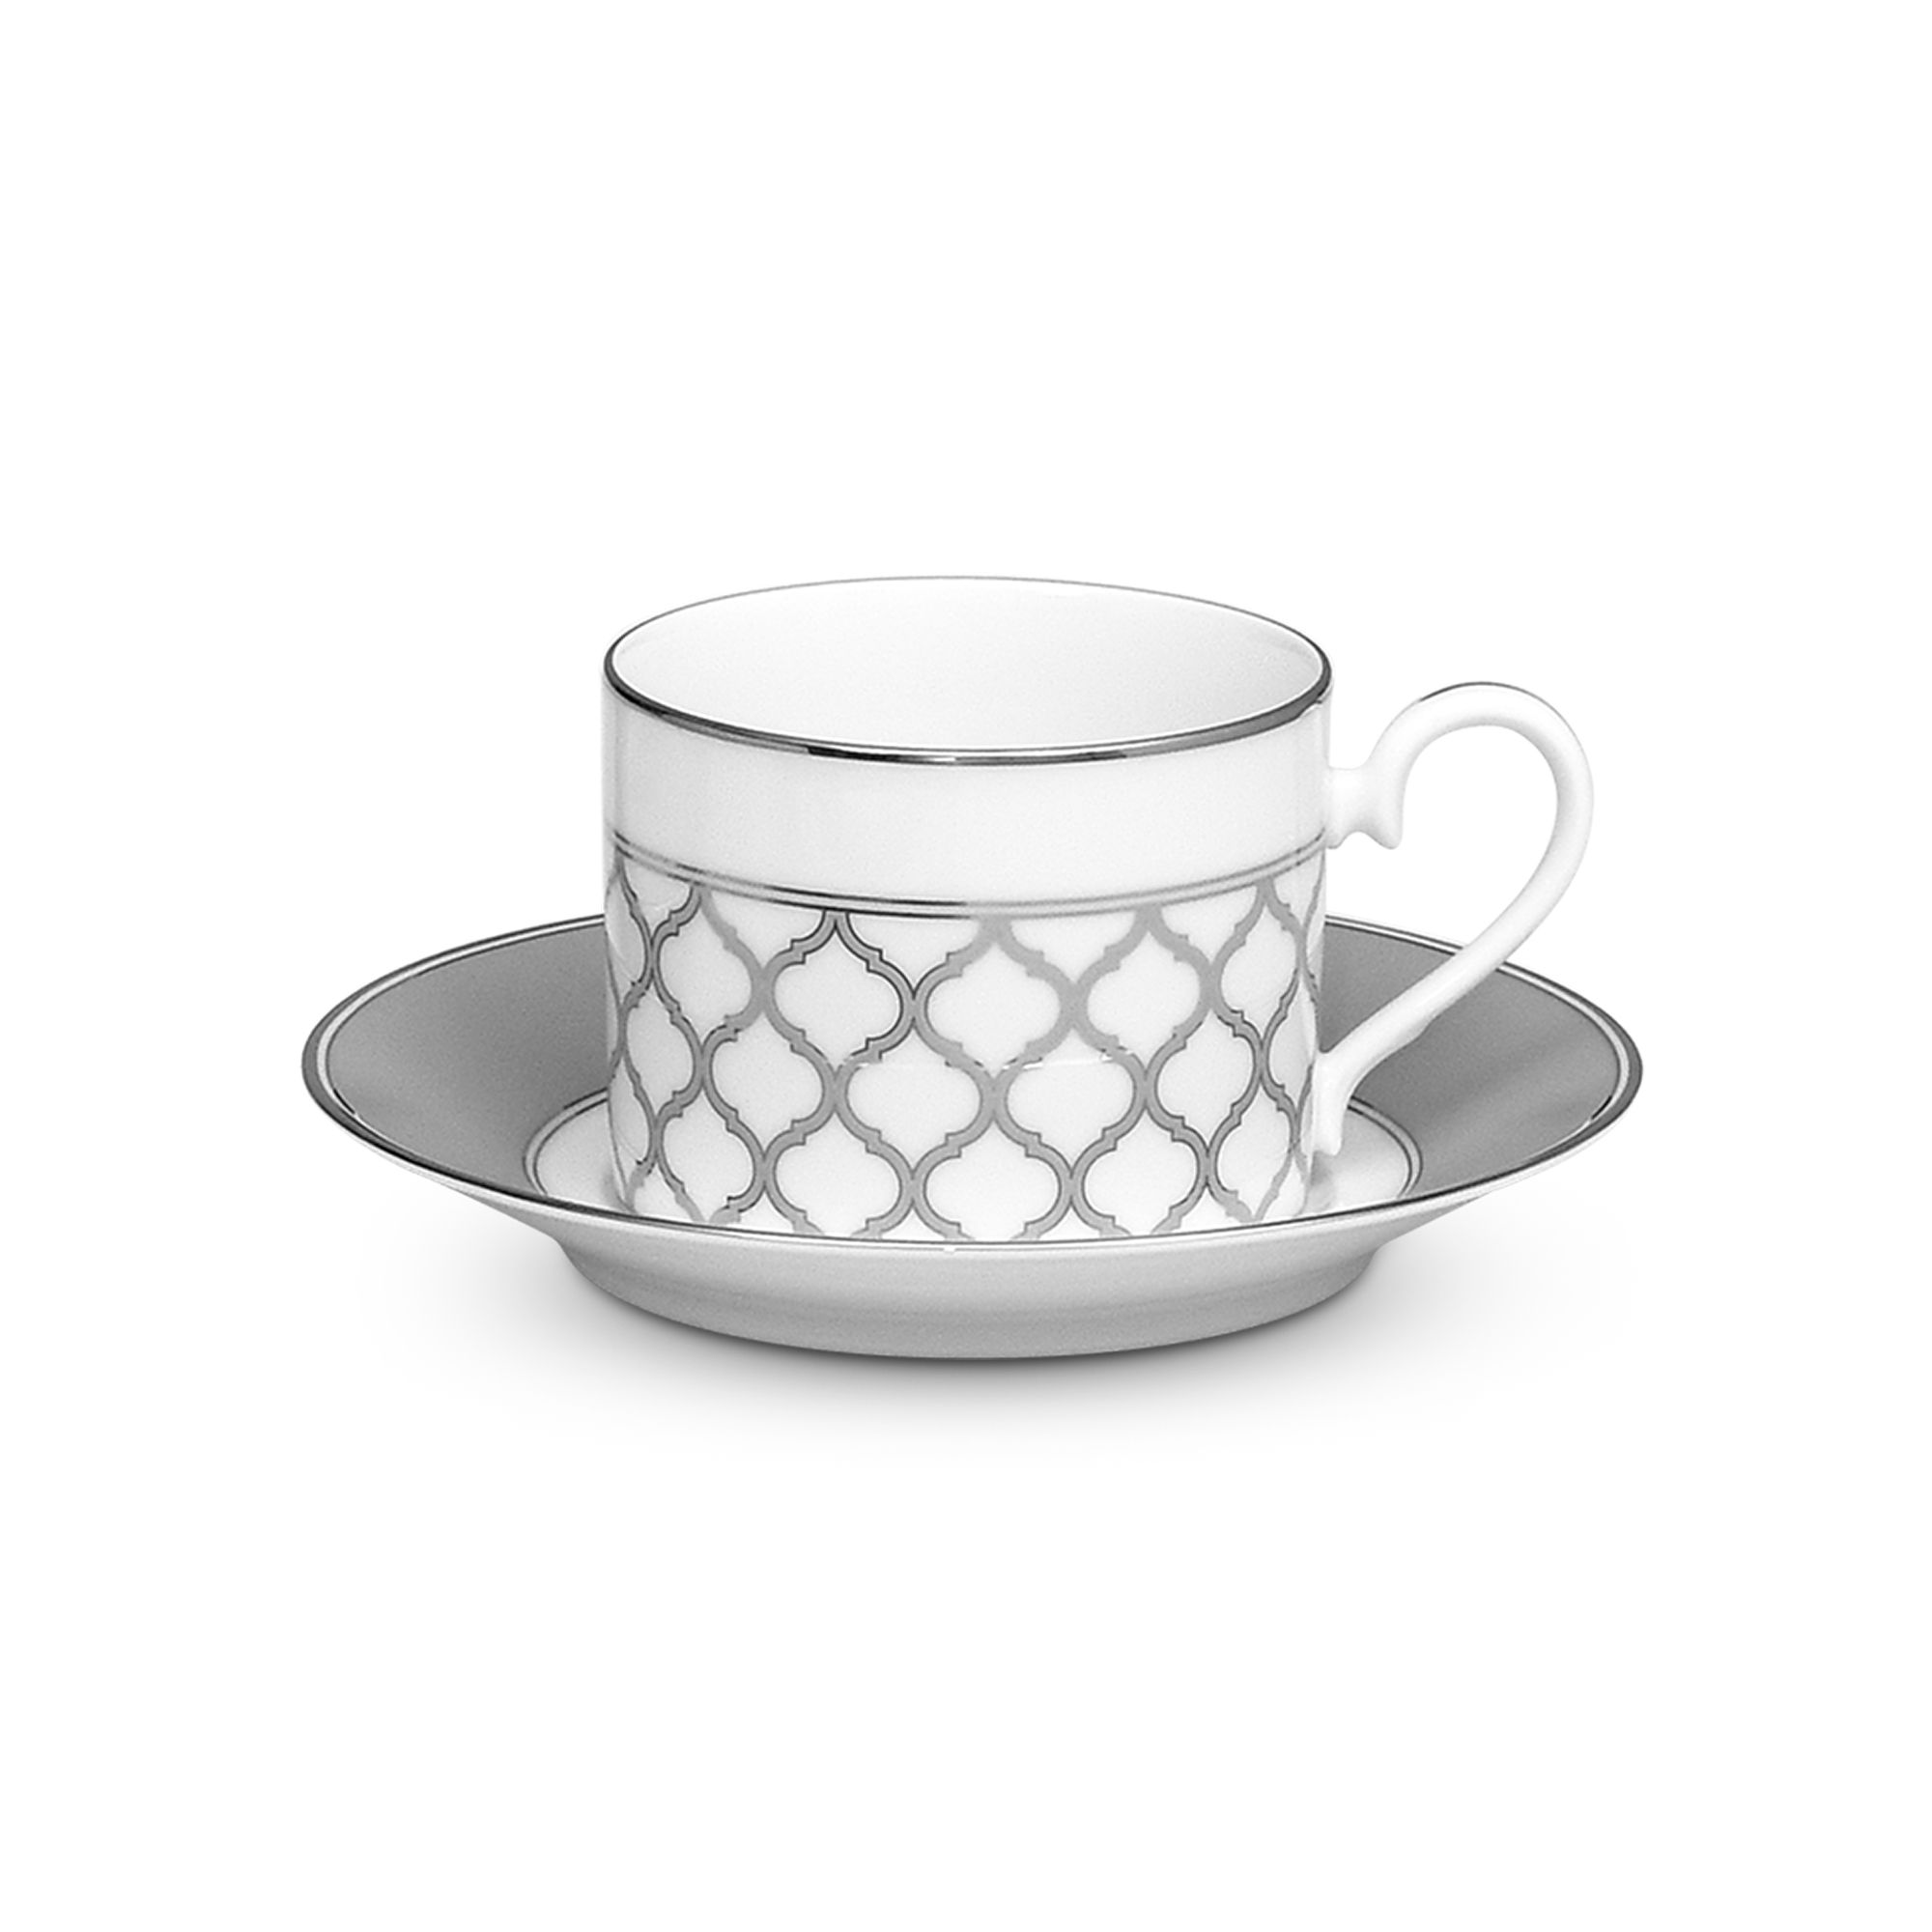  Chén trà (tách trà) kèm đĩa lót dung tích 250ml sứ trắng | Eternal Palace 1717L-T91089 